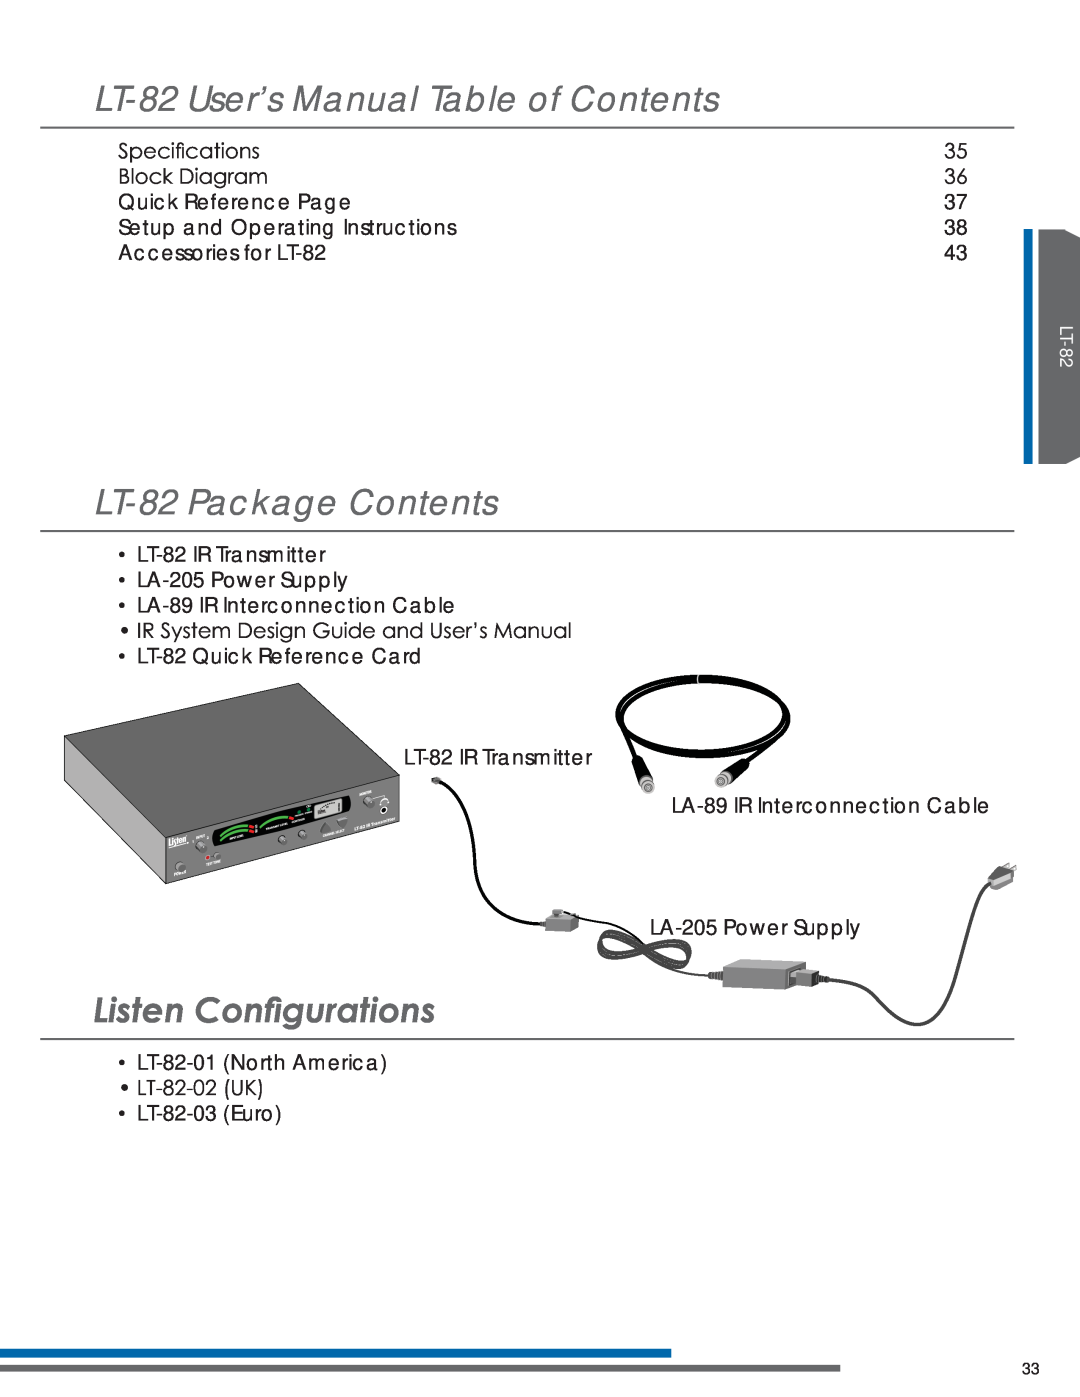 Listen Technologies LT-82LA, LR-42, LR-44 LT-82User’s Manual Table of Contents, LT-82Package Contents, Lvwhq&Rqàjxudwlrqv 